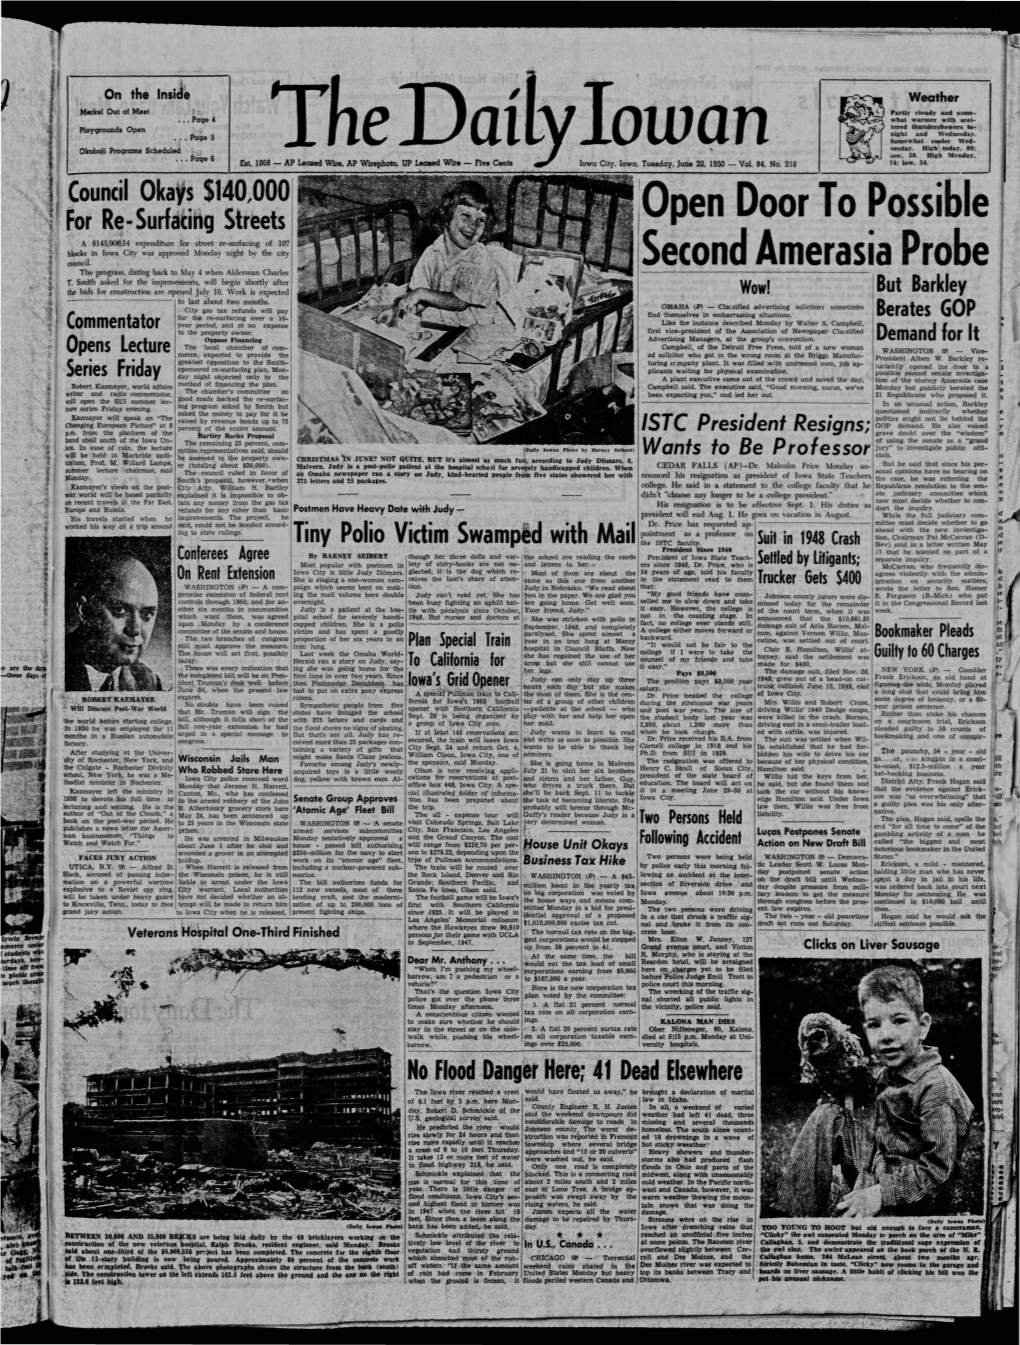 Daily Iowan (Iowa City, Iowa), 1950-06-20